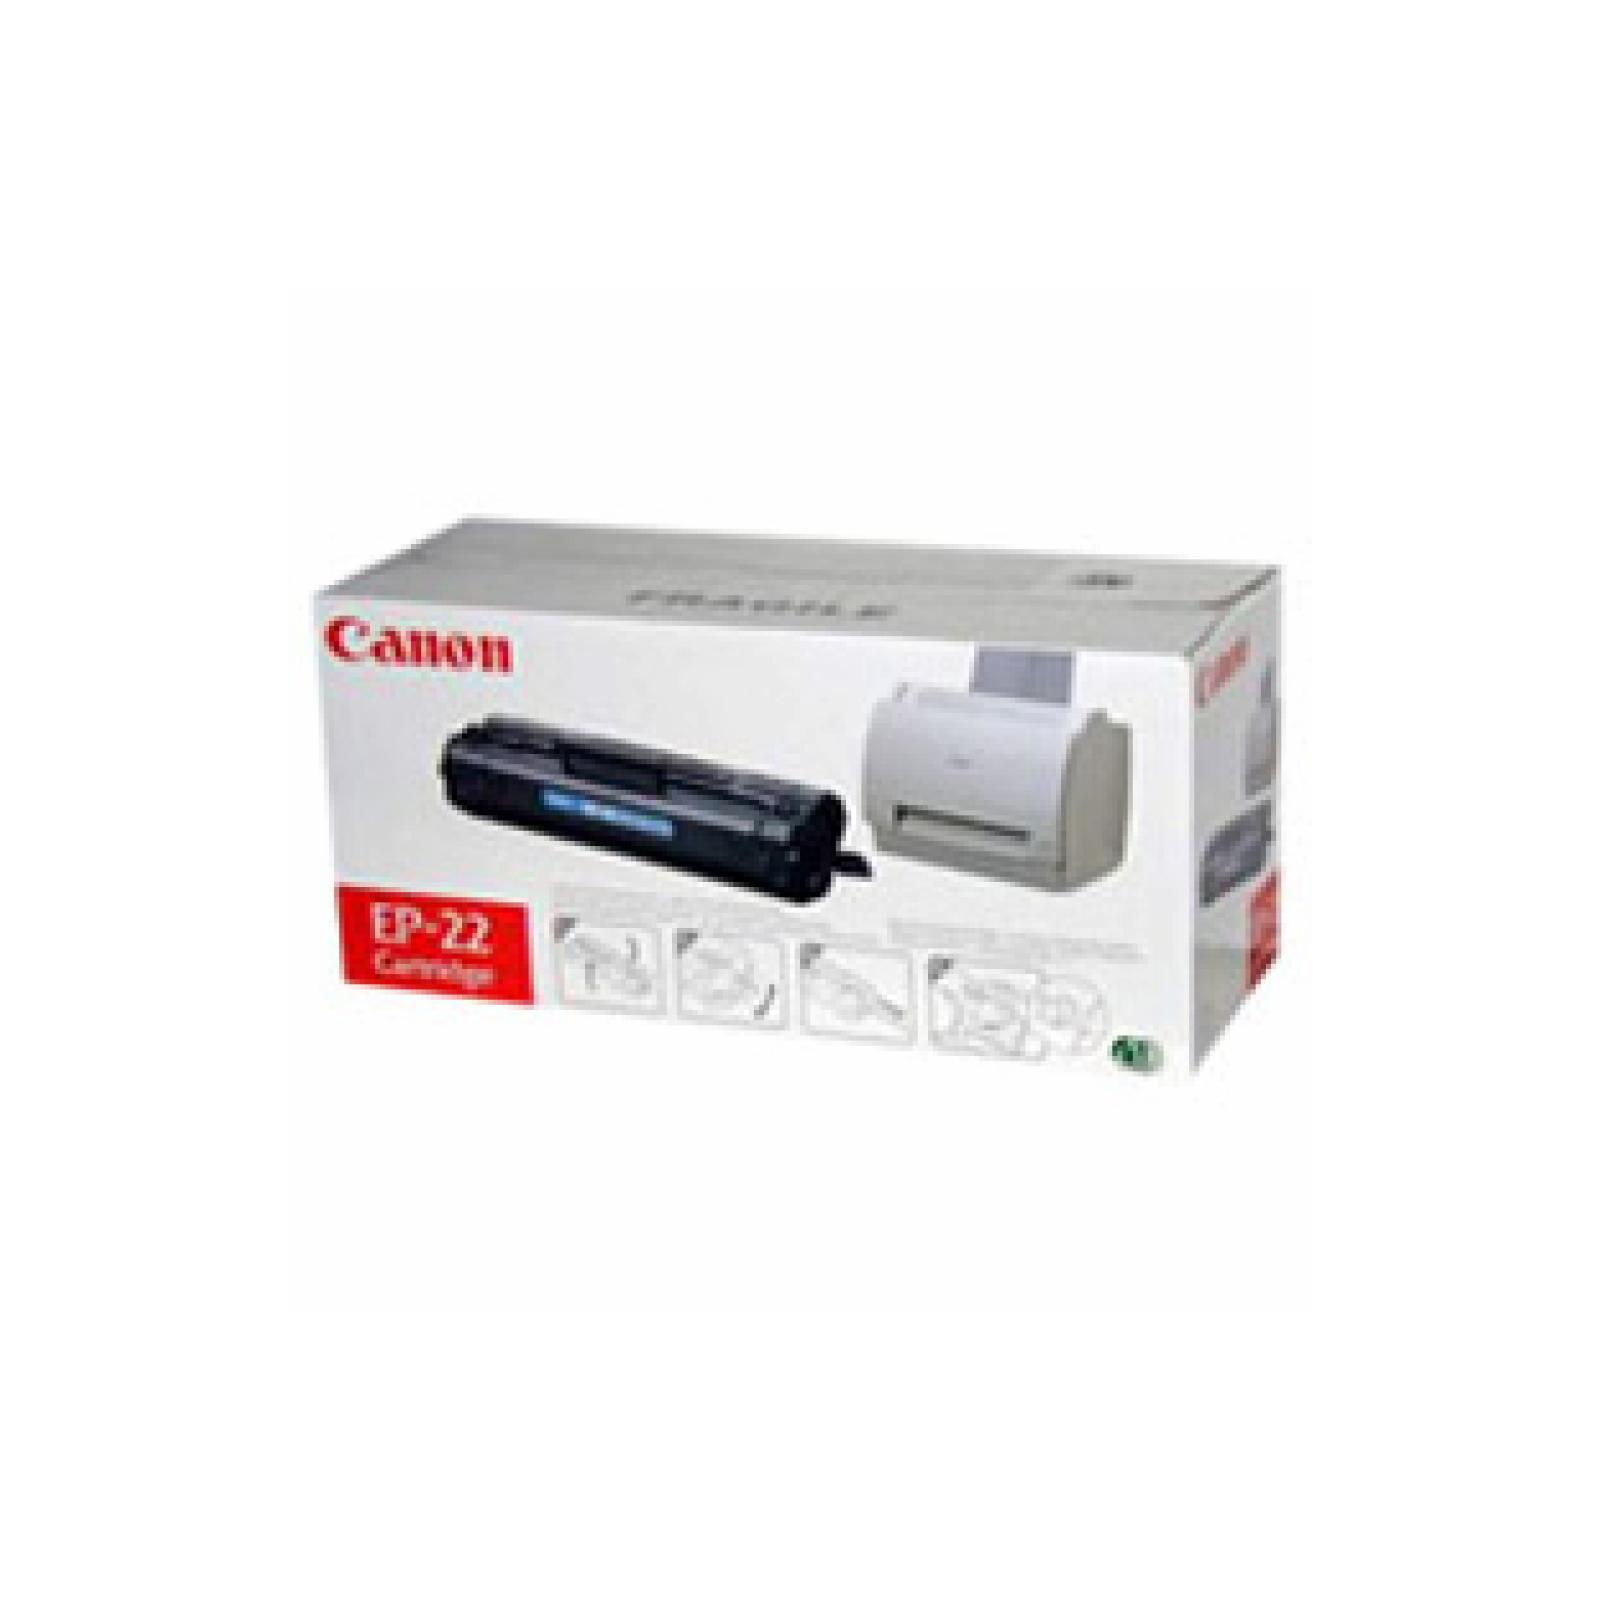 Услуга заправка картриджа Canon EP-22 Brain Service (Canon EP-22 (1550A003) 2.5K)